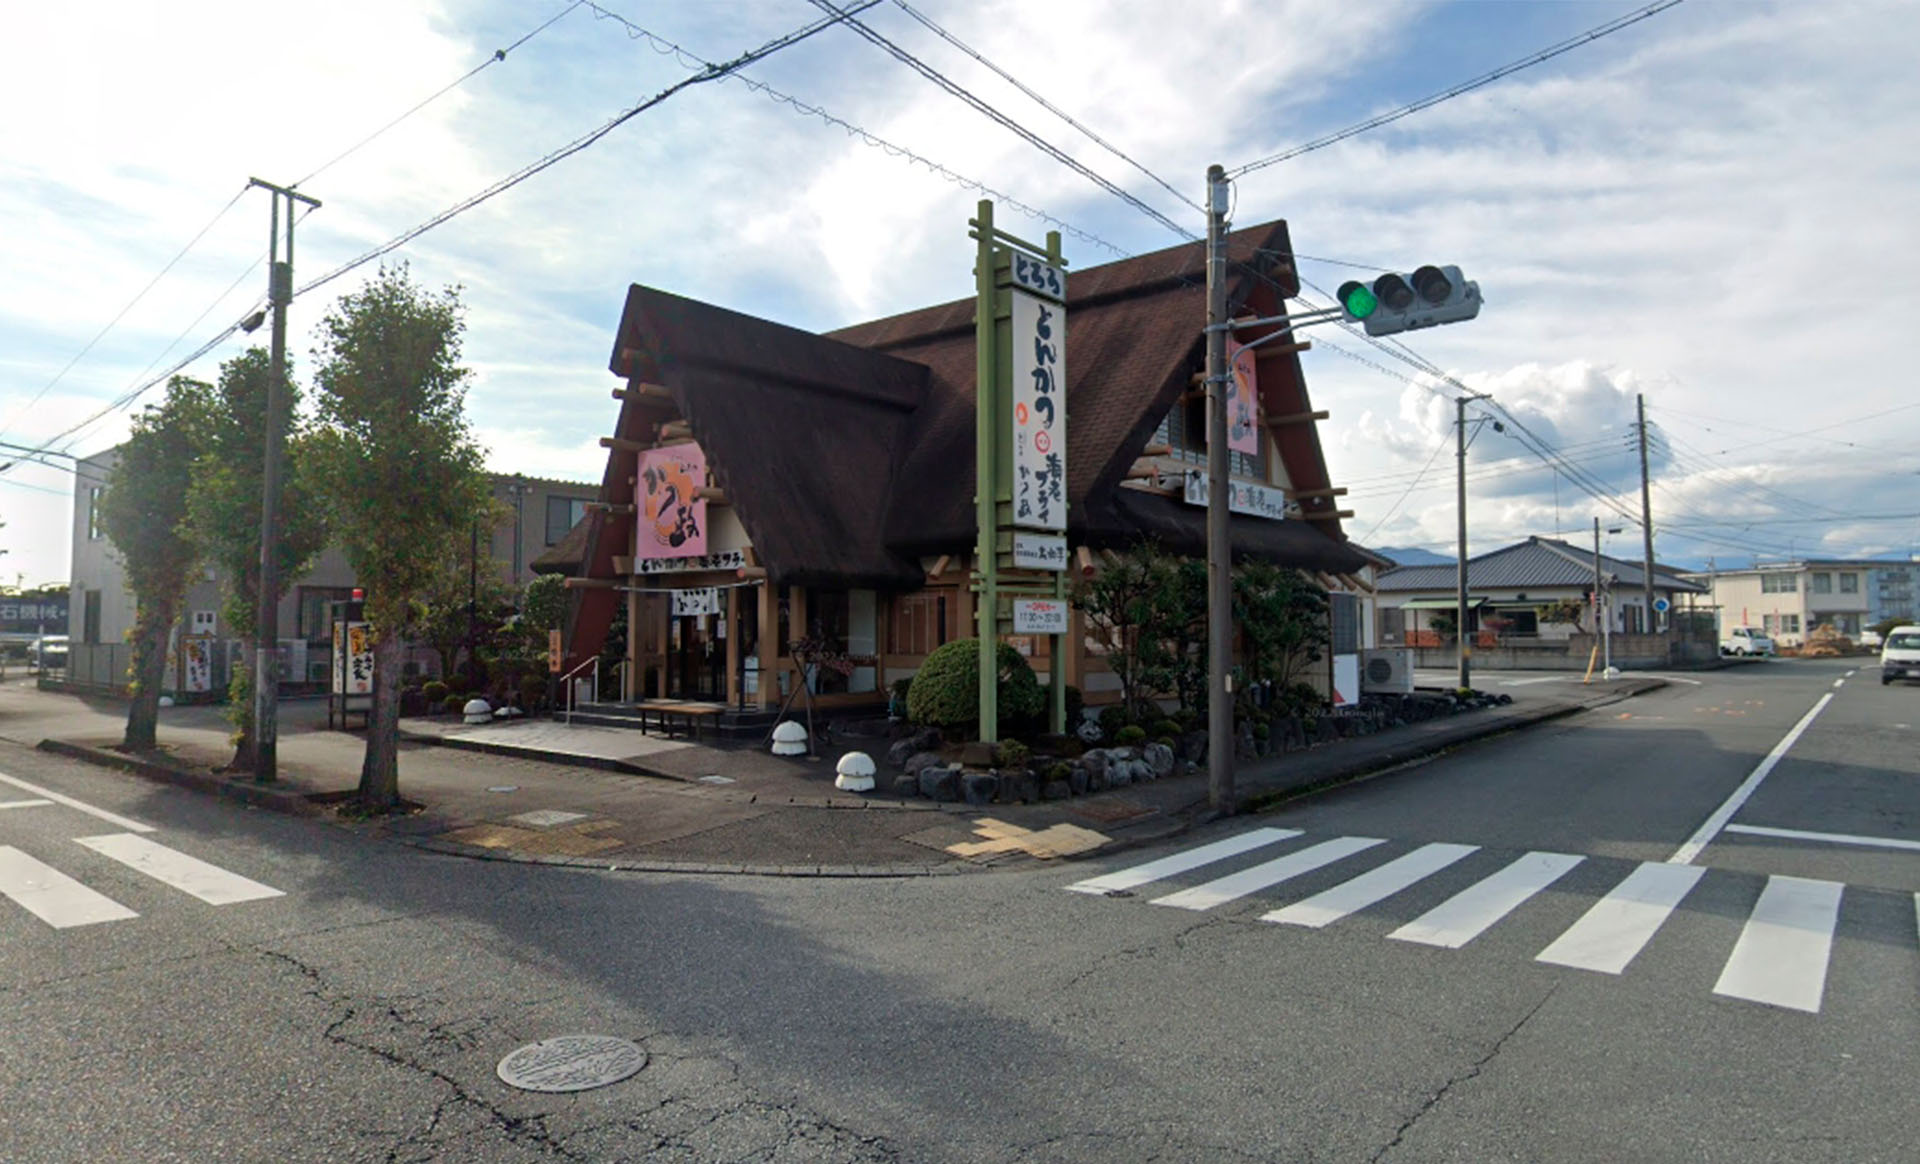 かつ政津田店様の屋根を修繕しました。